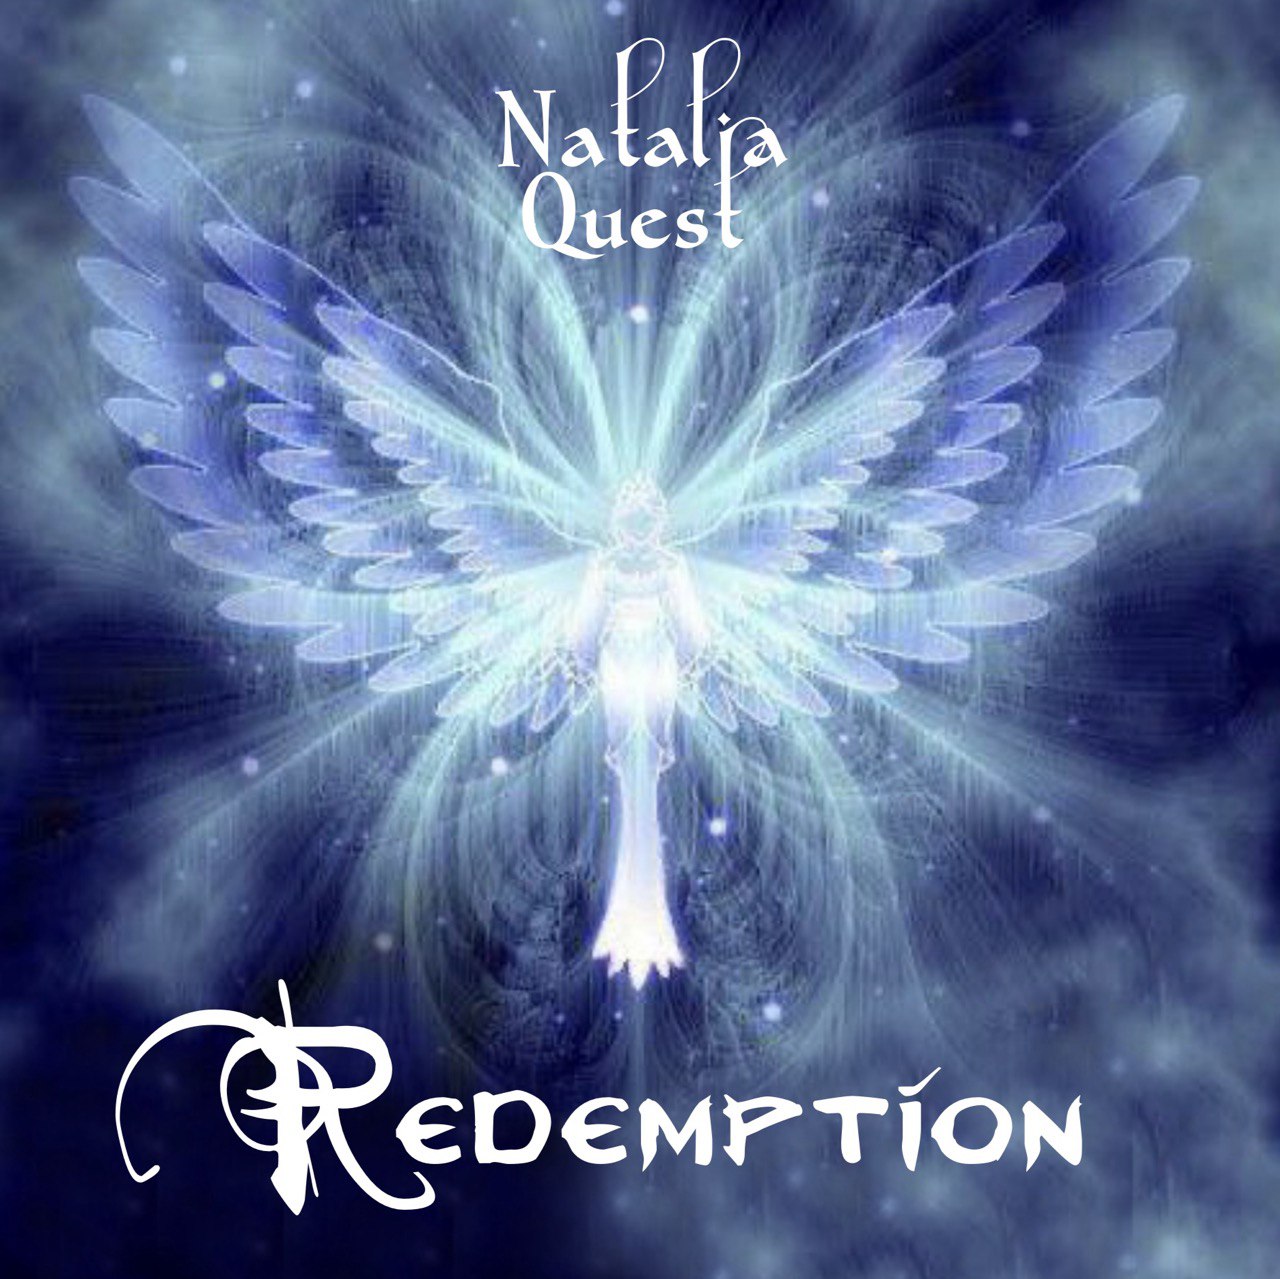  “Redemption” de Natalia Quest: Un viaje de Liberación y Sabiduría